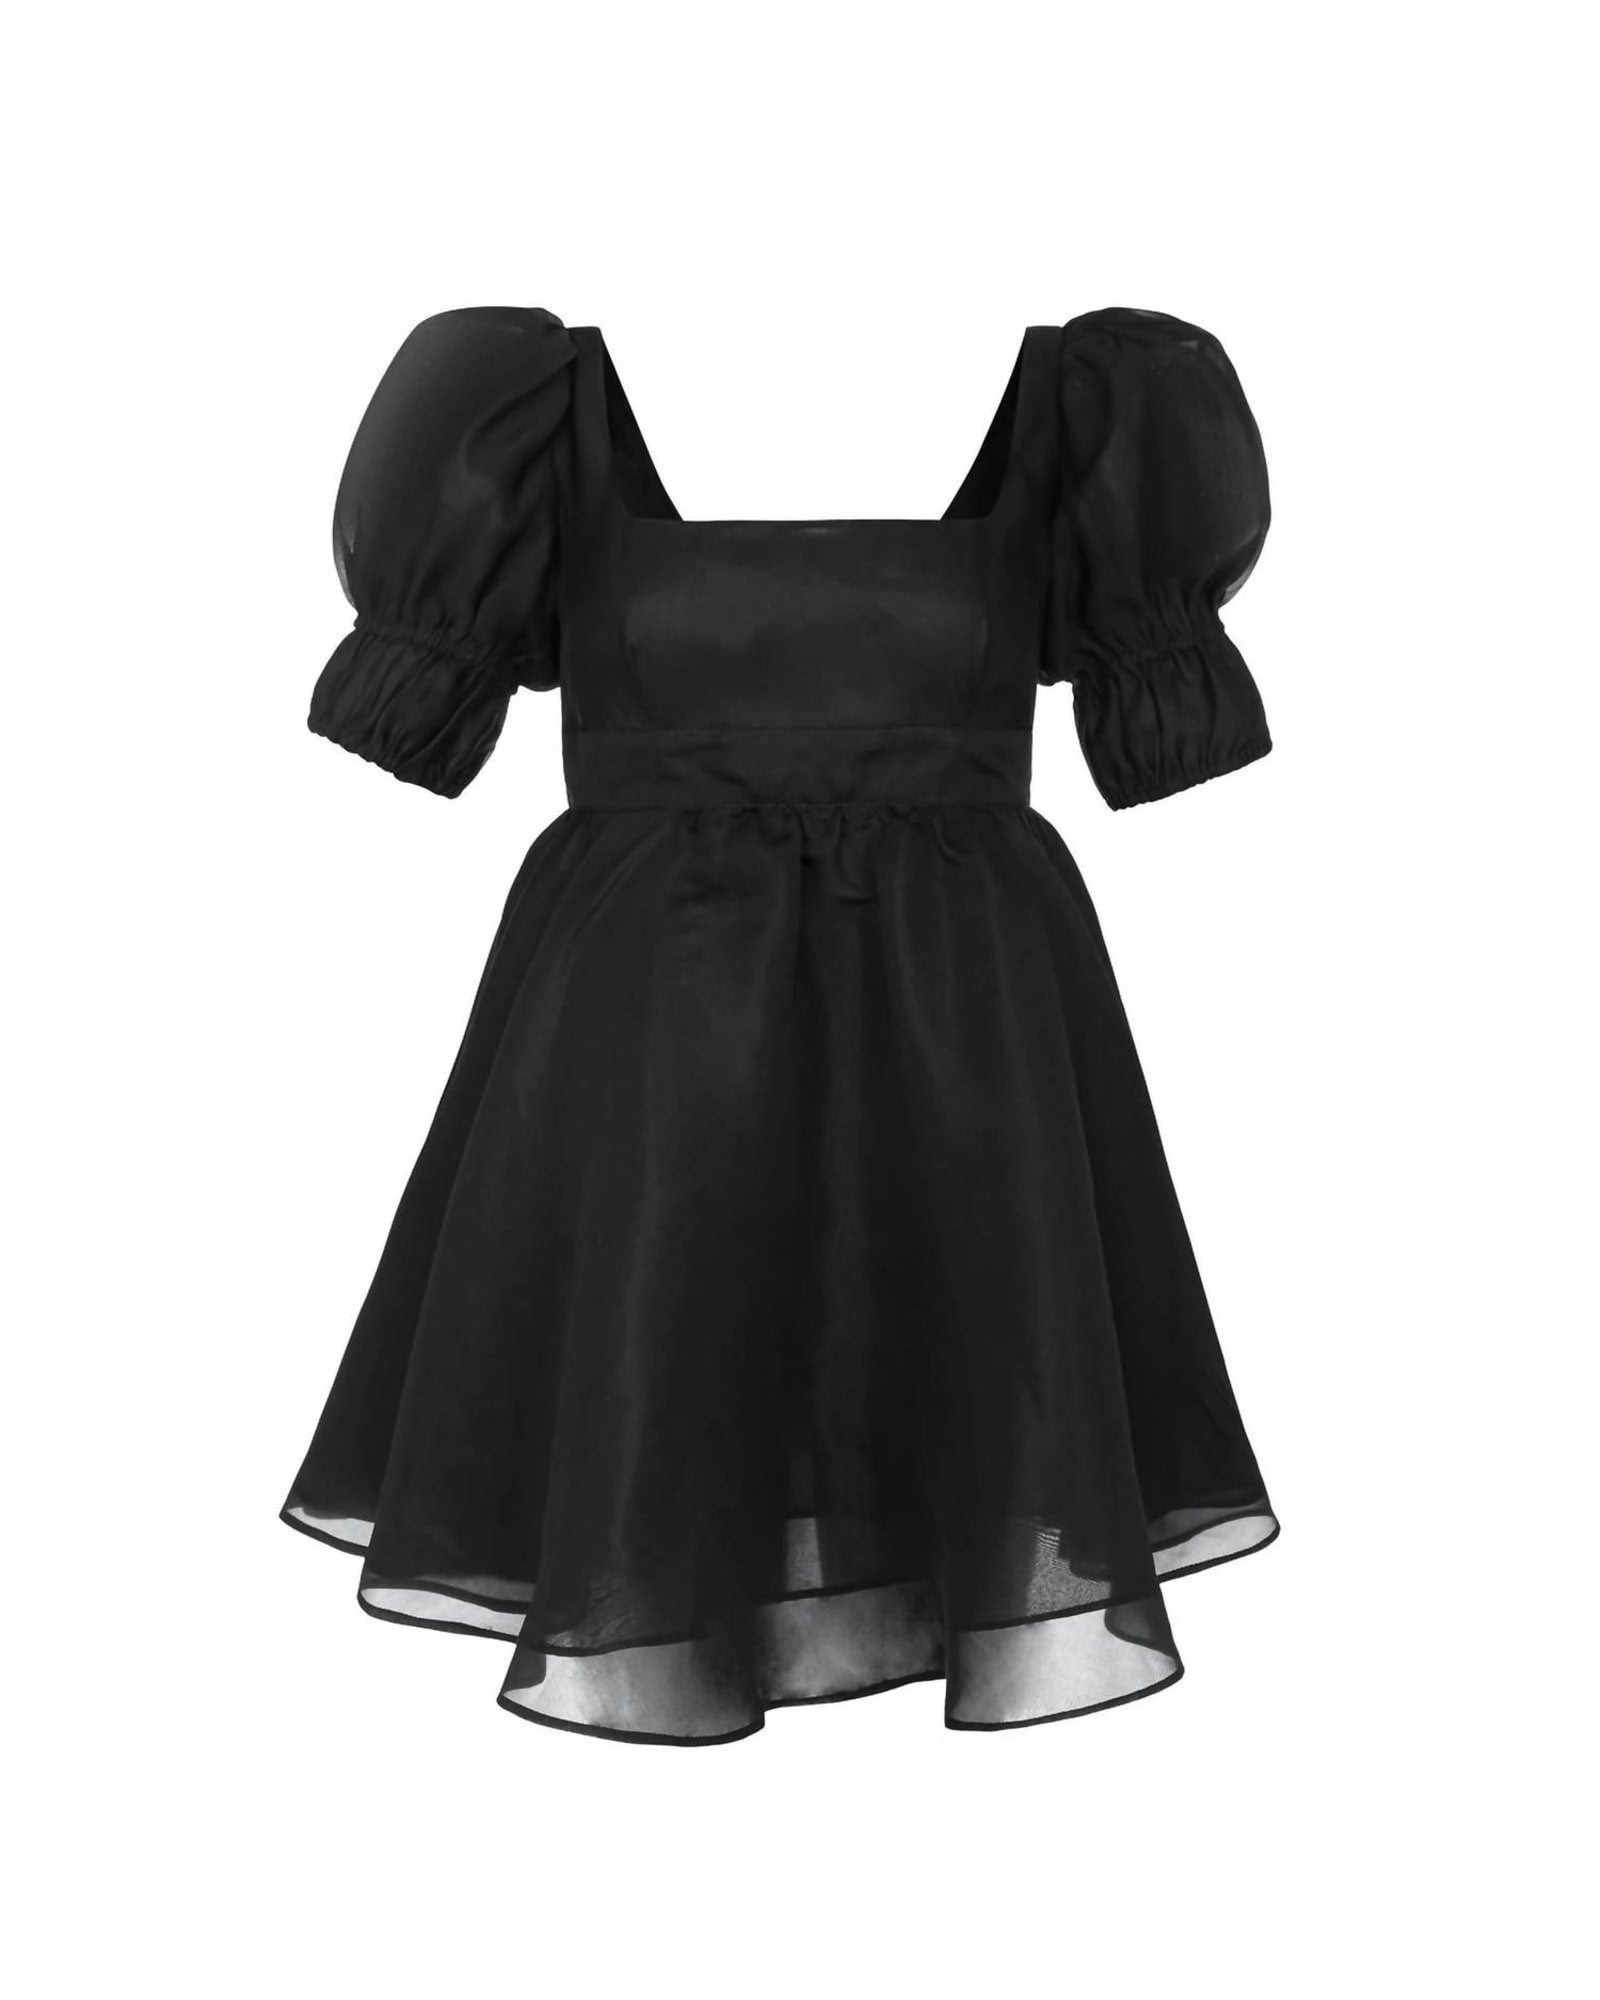 Regency Mini Dress in Black Shimmer | Black Shimmer